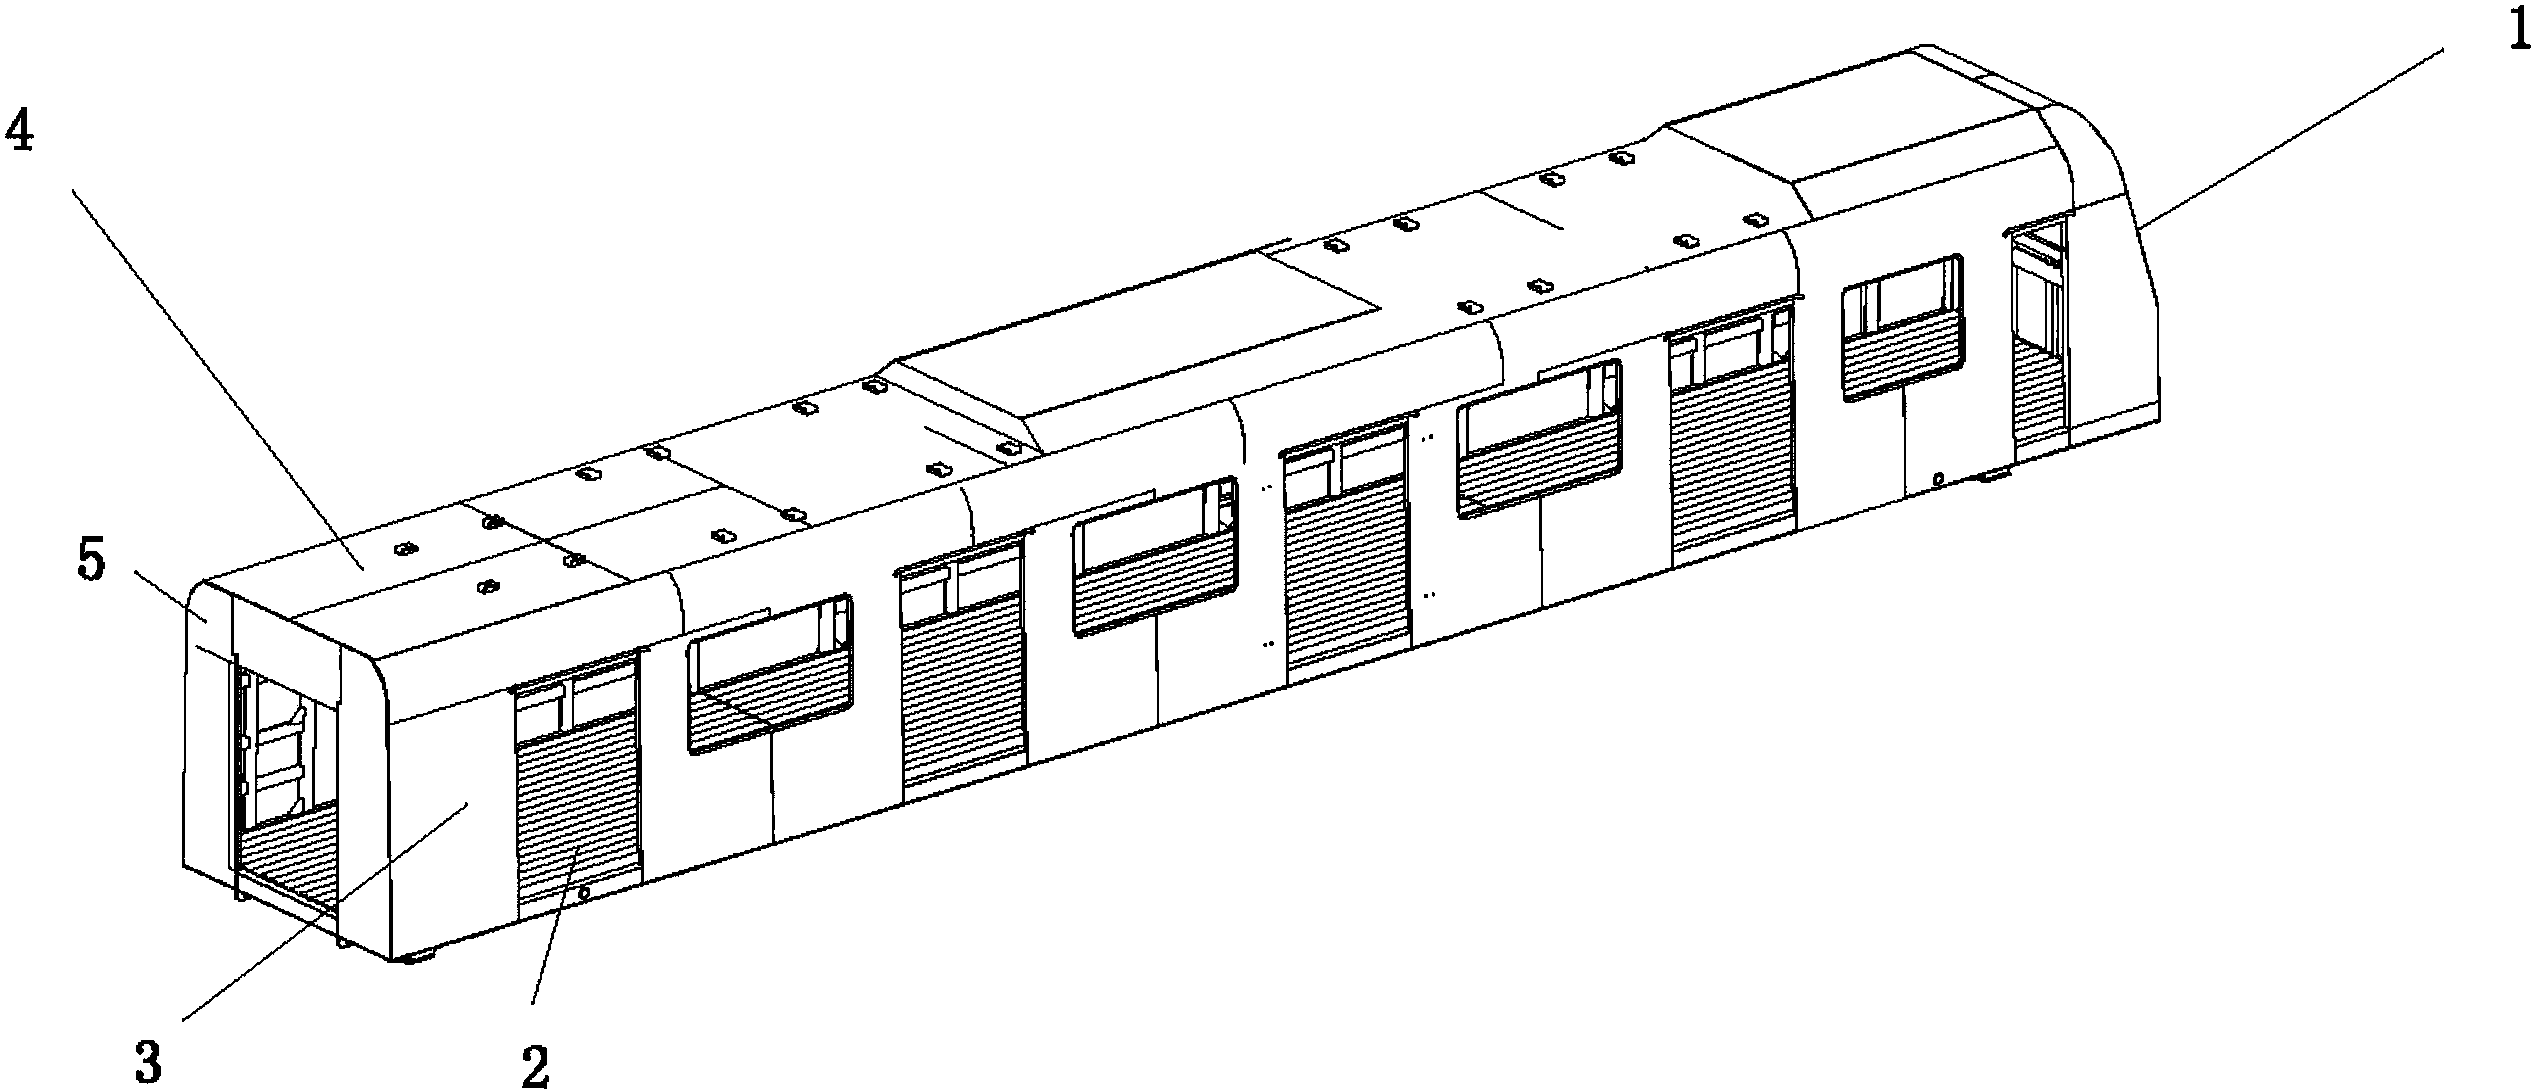 地铁车体结构图片